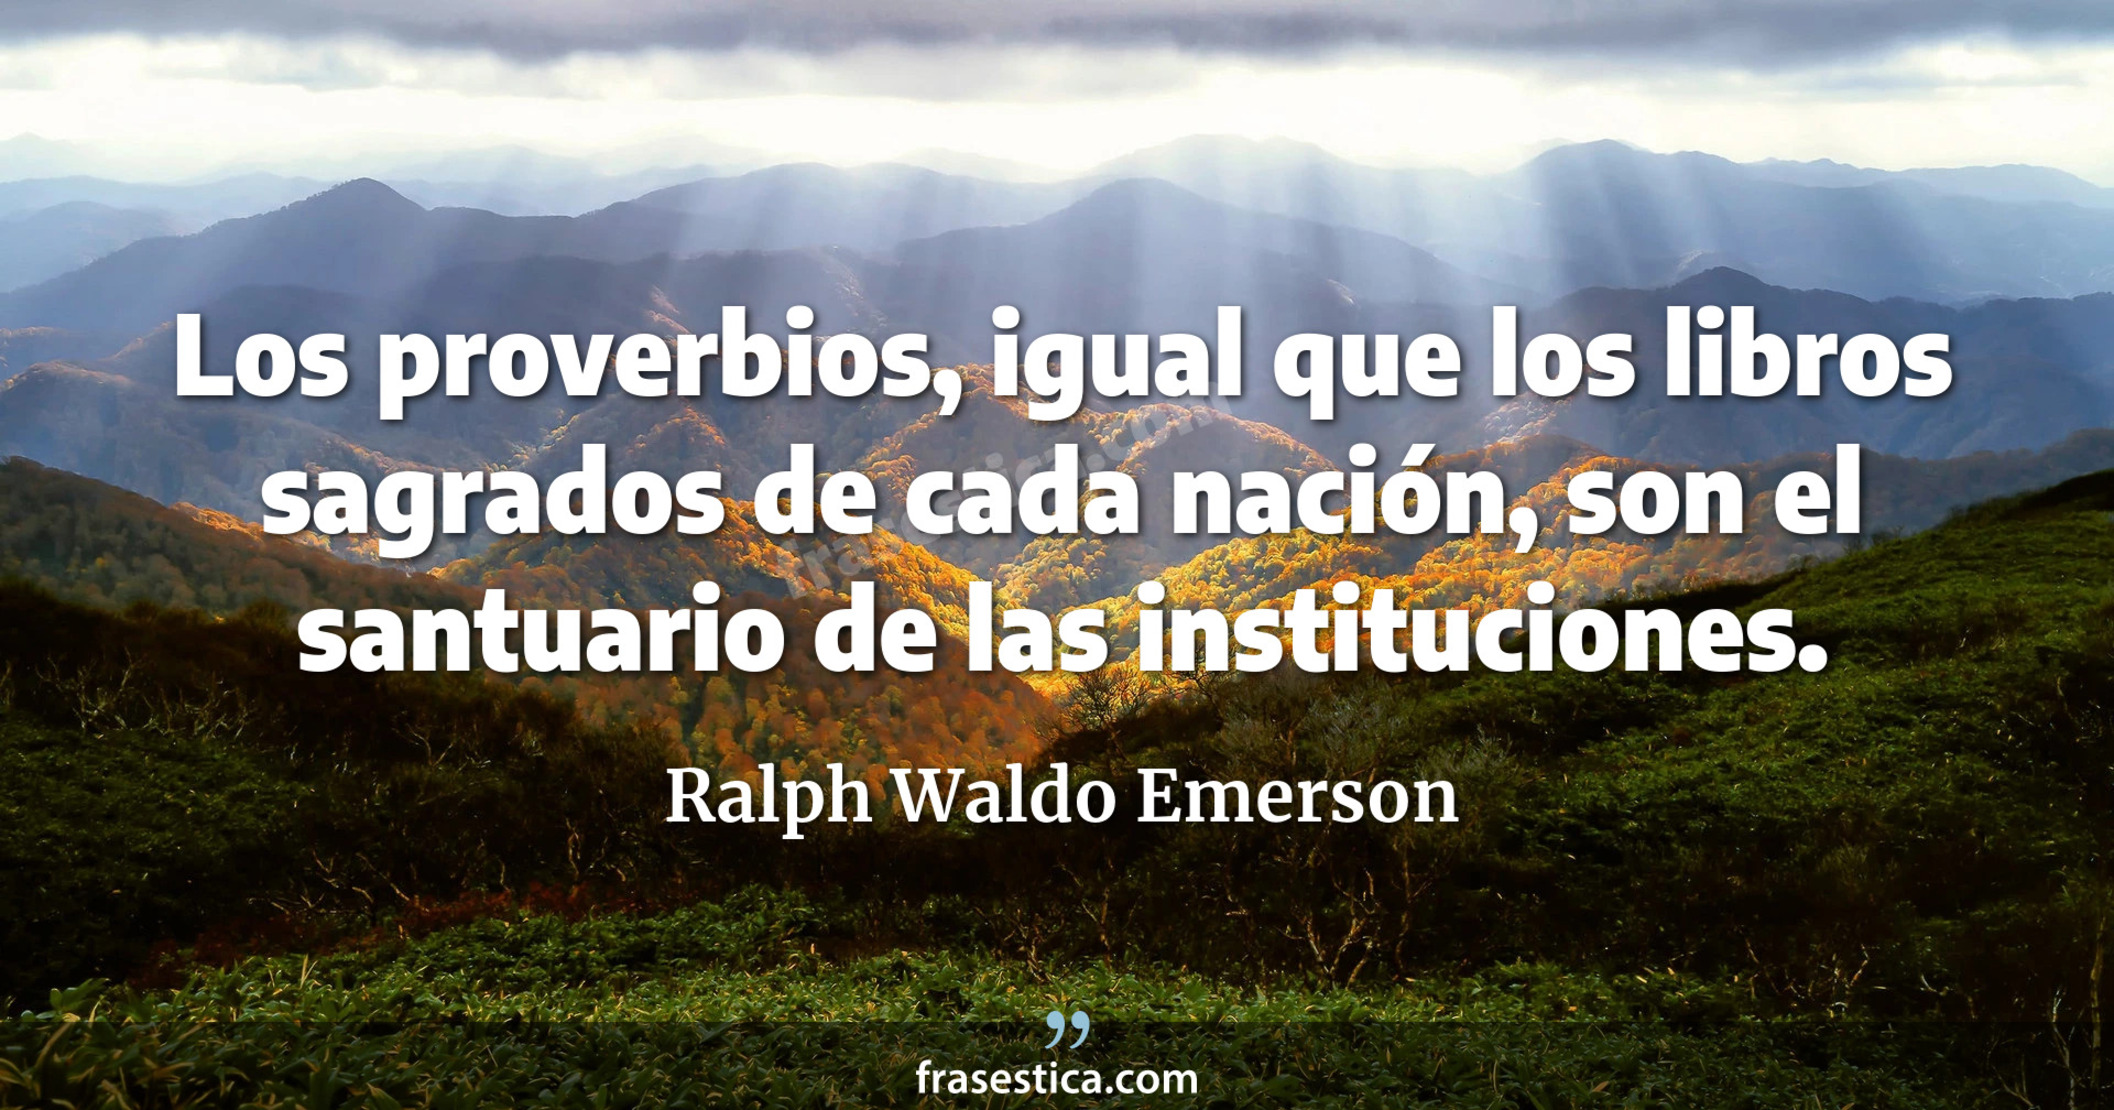 Los proverbios, igual que los libros sagrados de cada nación, son el santuario de las instituciones. - Ralph Waldo Emerson